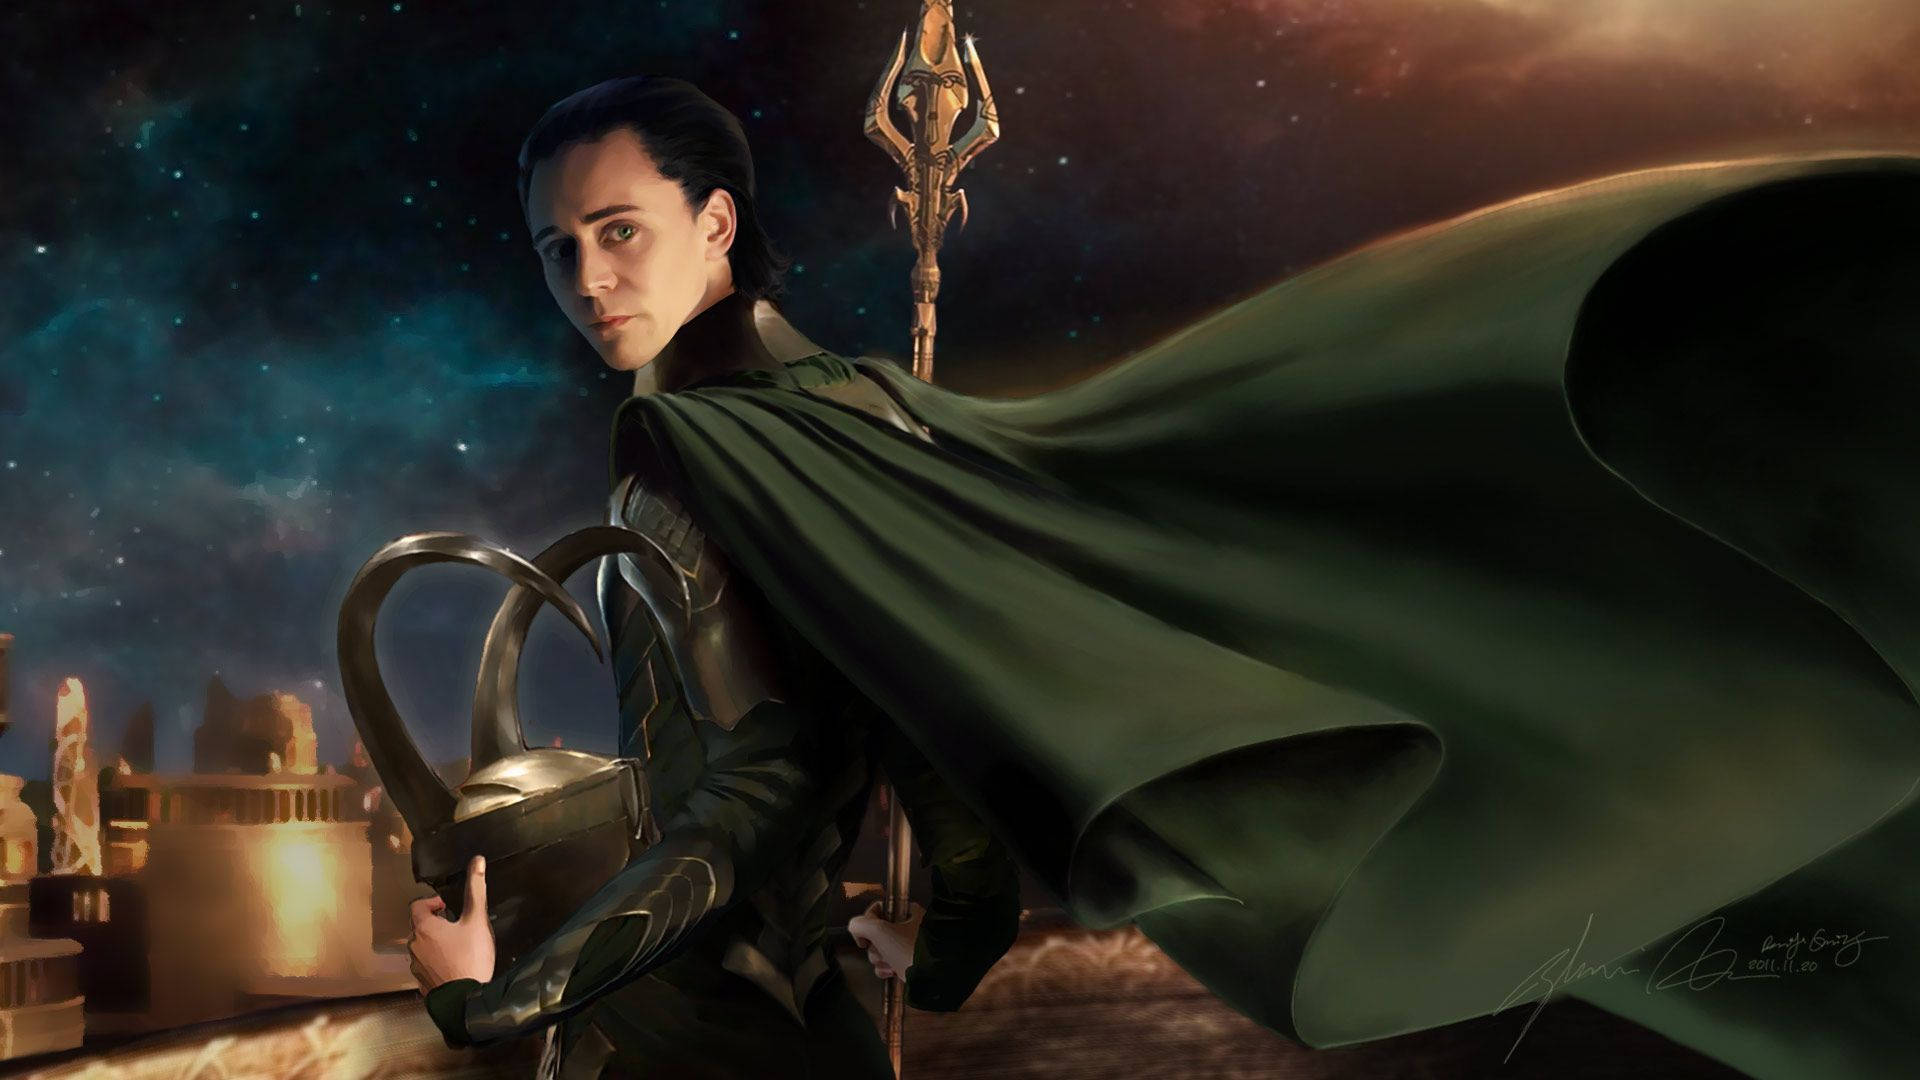 The God of Mischief Loki, Wreaking Havoc in Asgard Wallpaper